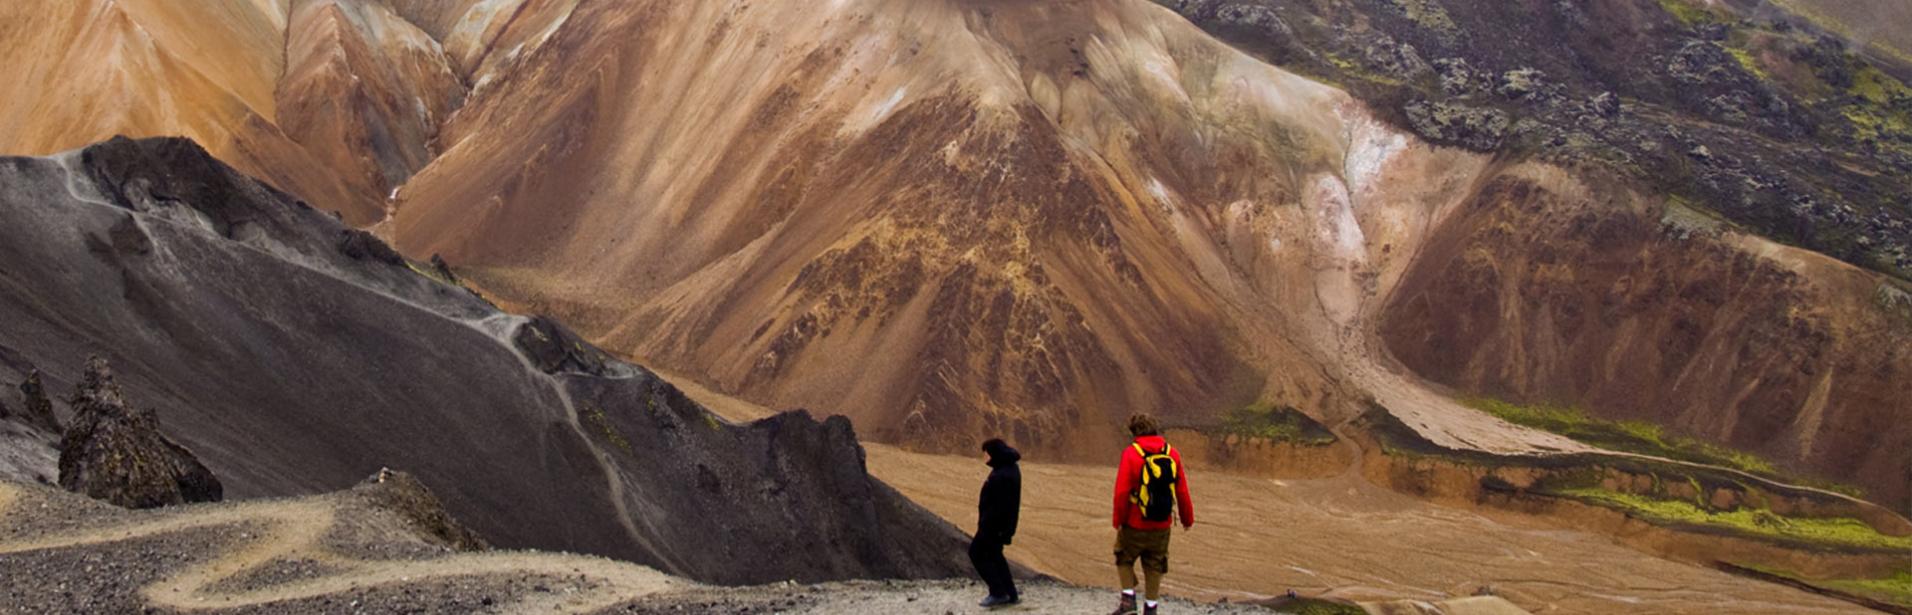 Två personer utforska det isländska höglandet.